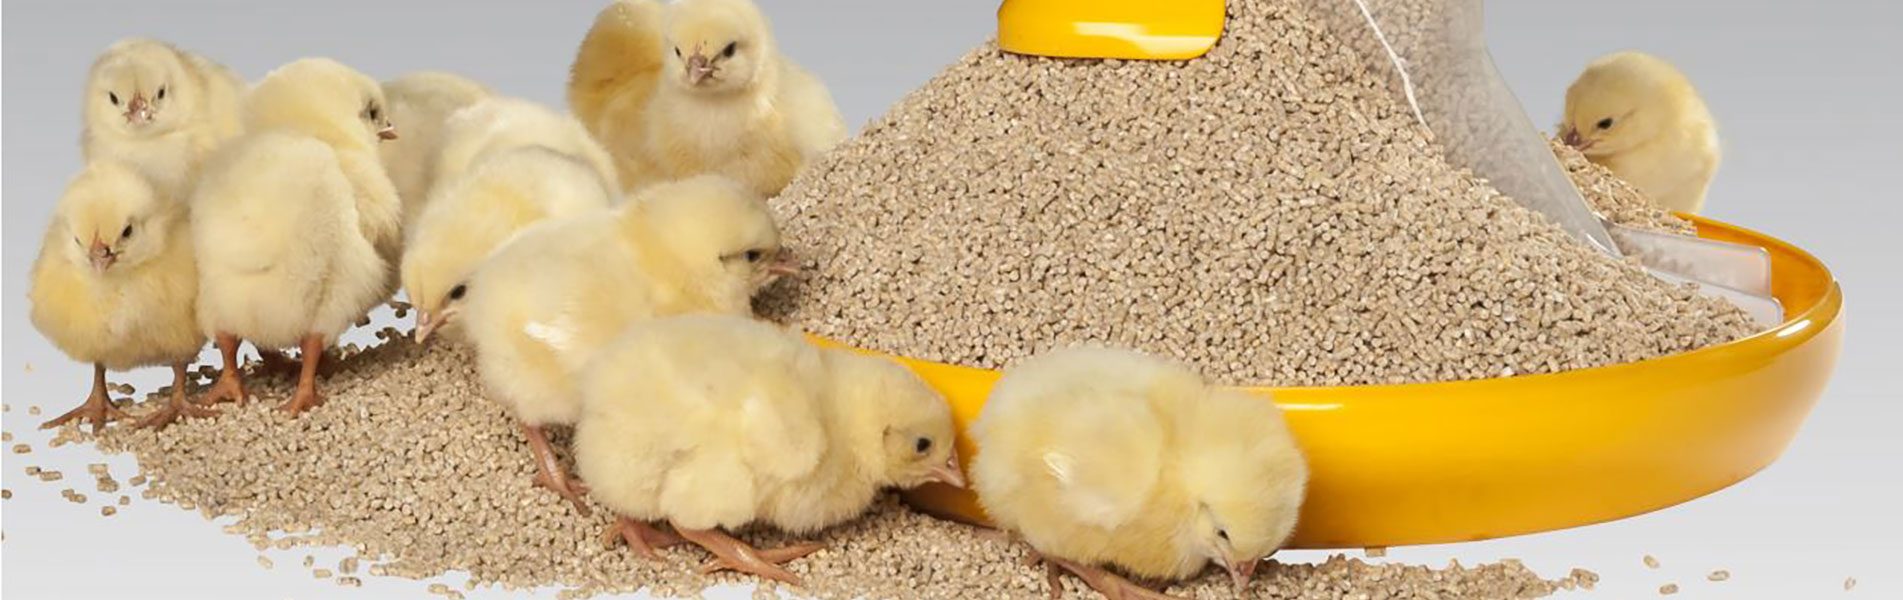 Recomendaciones nutricionales en piensos pre-starter de pollitos -  Avicultura